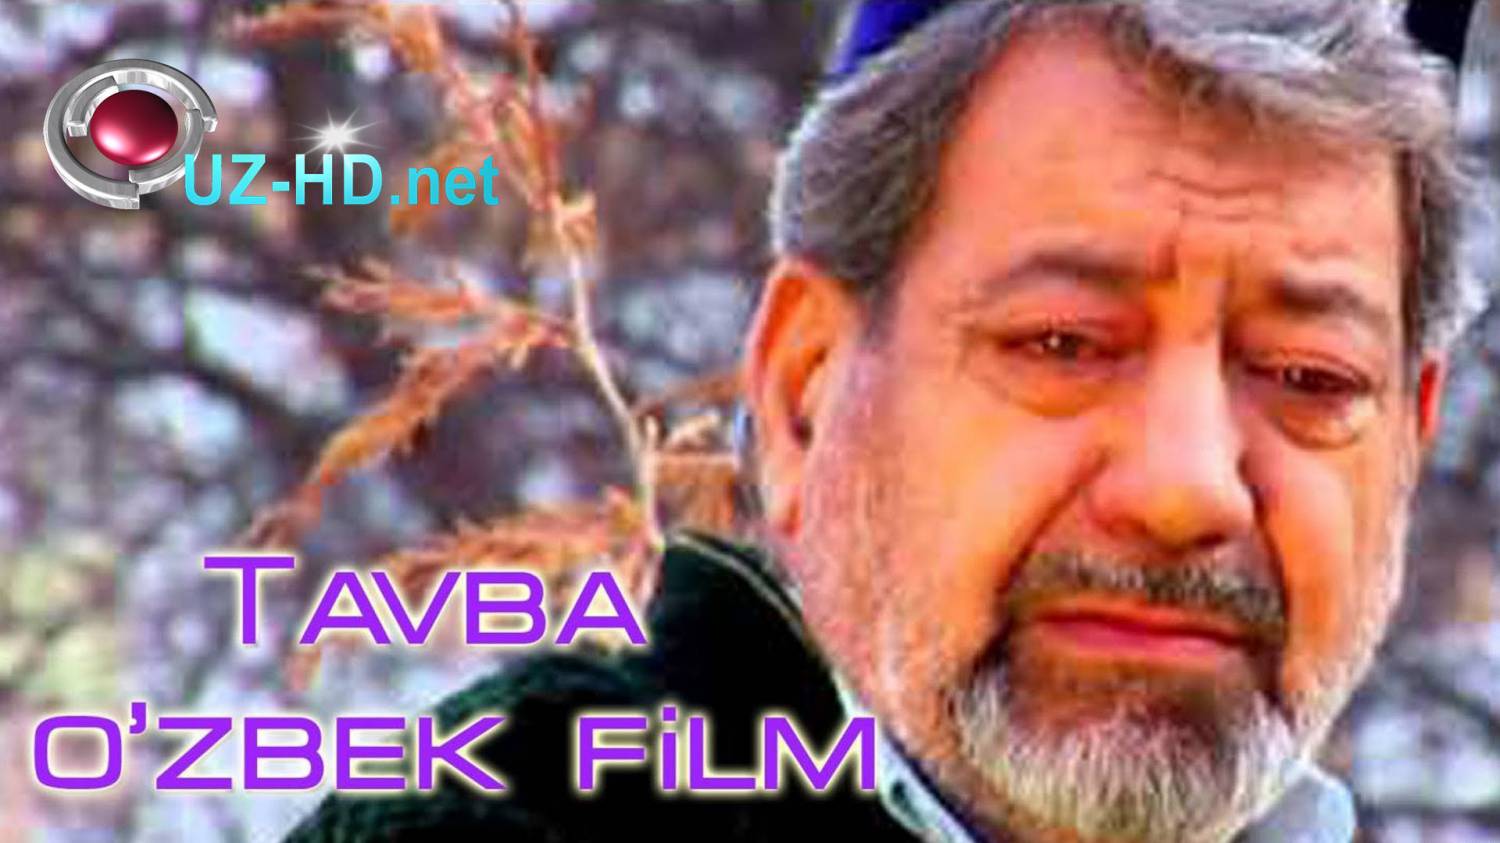 Tavba (o'zbek film) | Тавба (узбекфильм) - смотреть онлайн